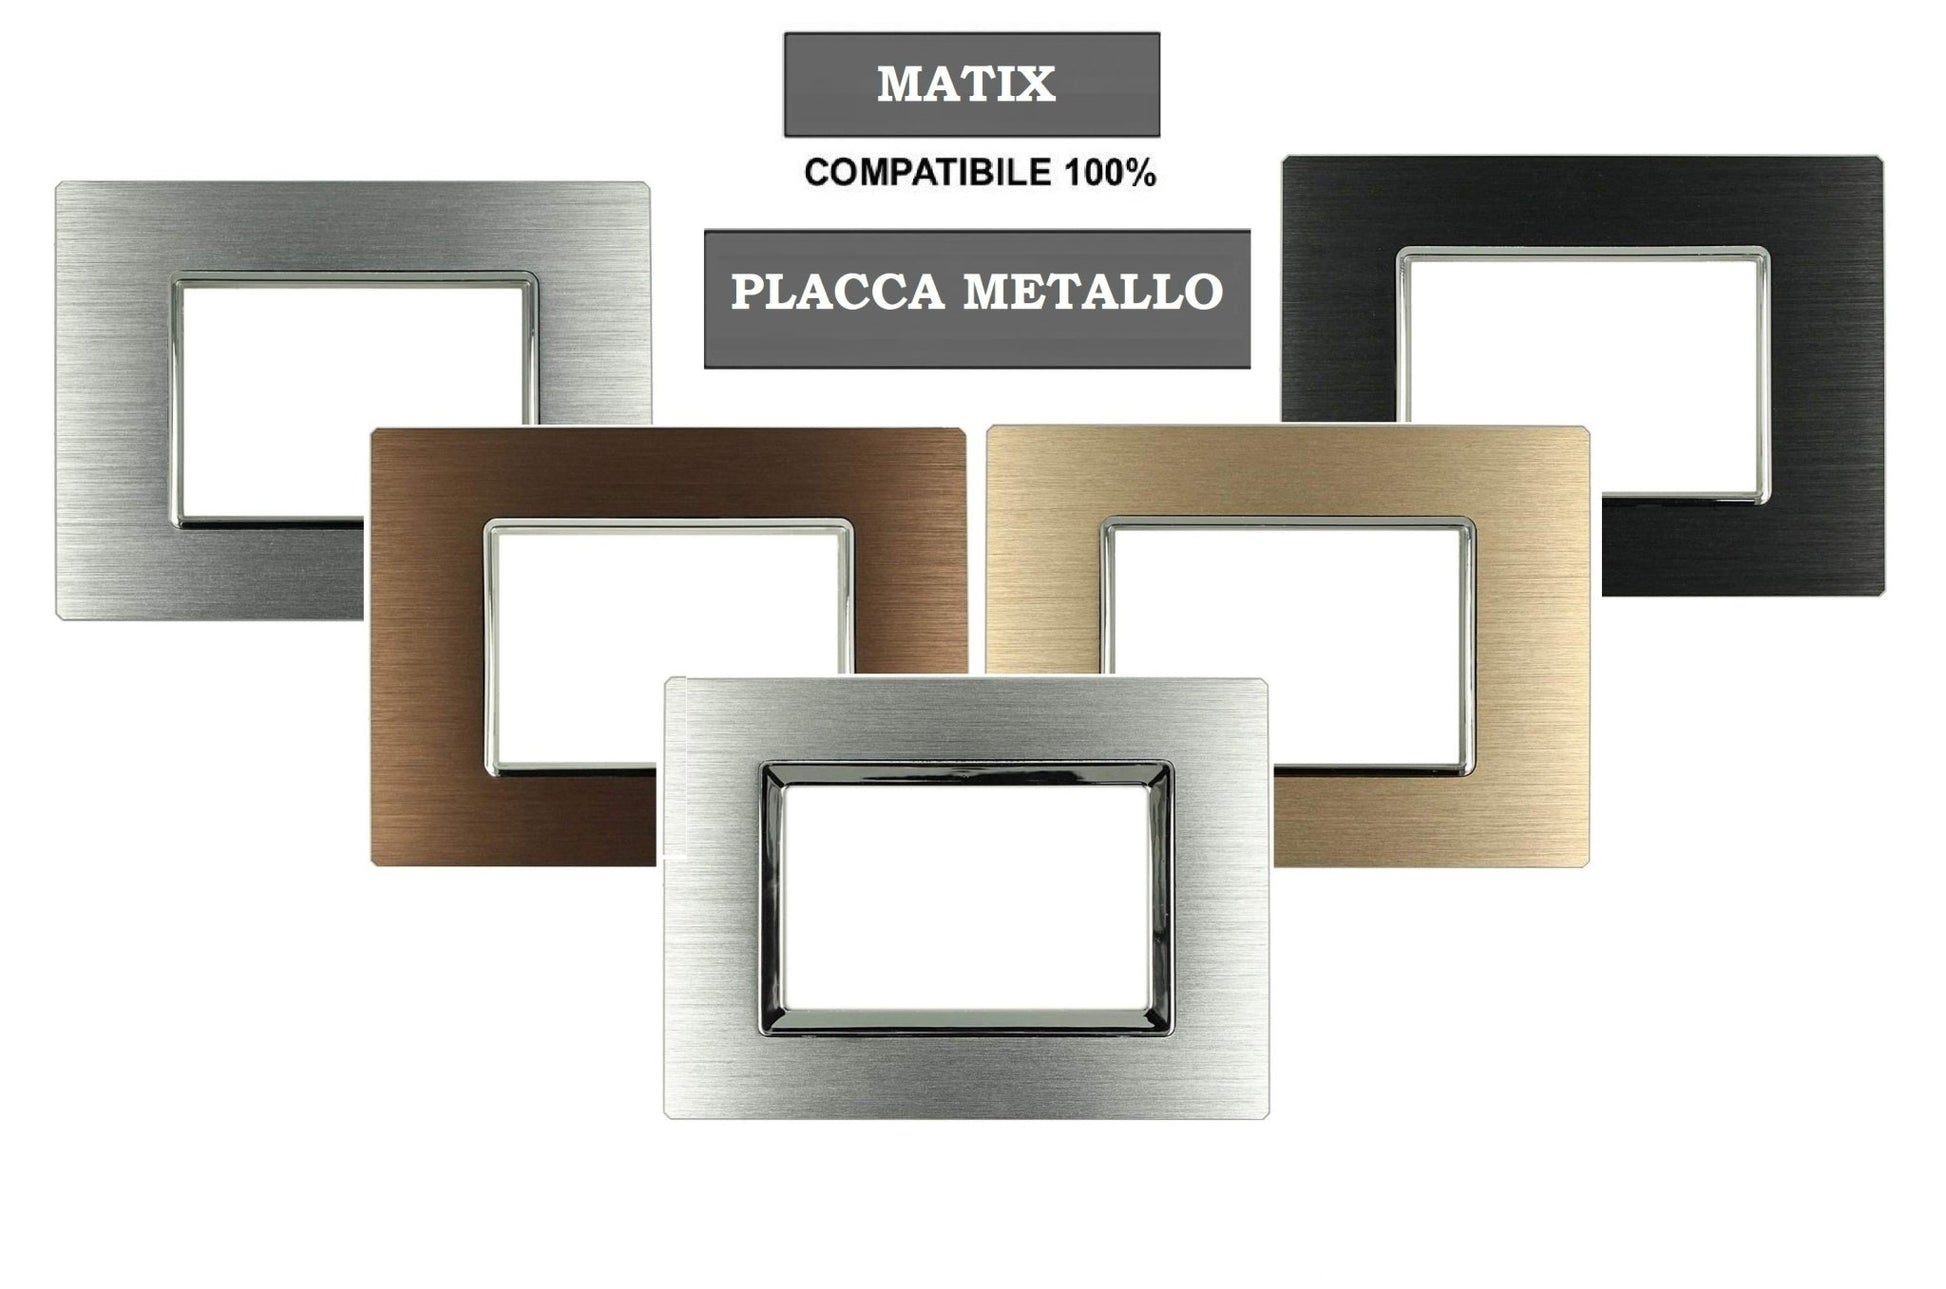 Placca Elegance Metallo Satinato compatibile Bticino Matix supporto muro incasso - puntoluceled